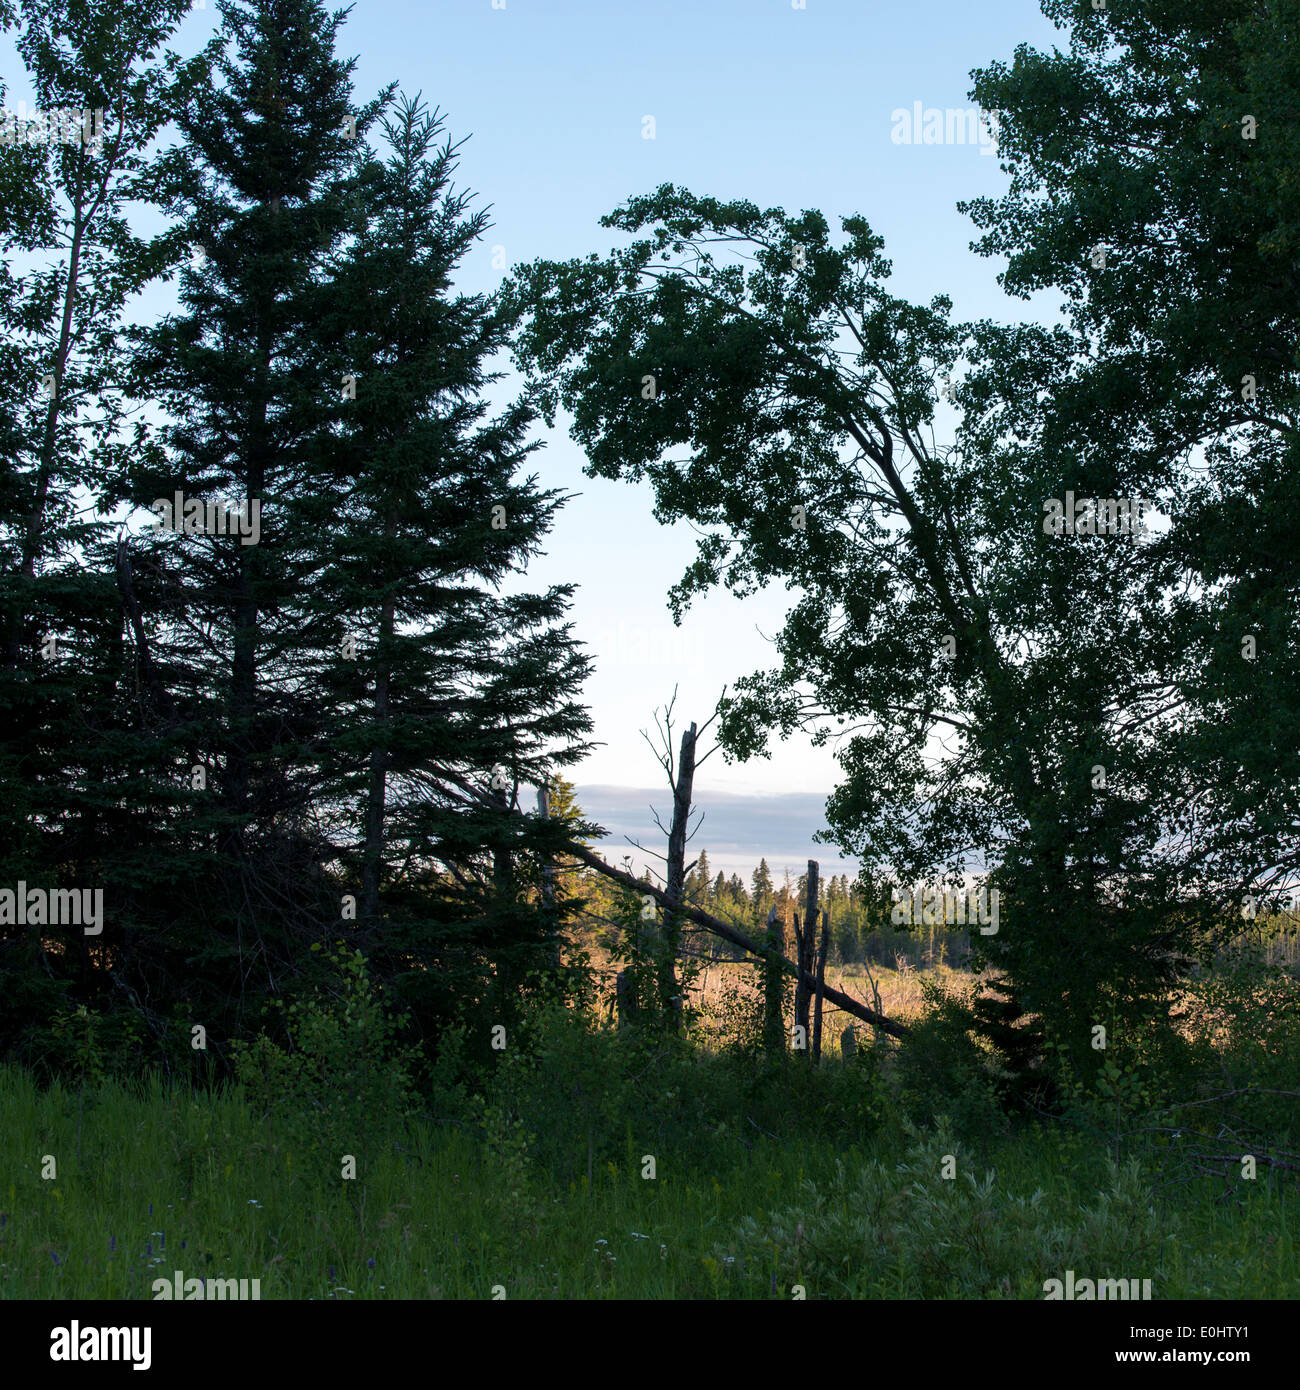 Arbres d'une forêt, camping du lac Audy, Parc national du Mont-Riding, Manitoba, Canada Banque D'Images